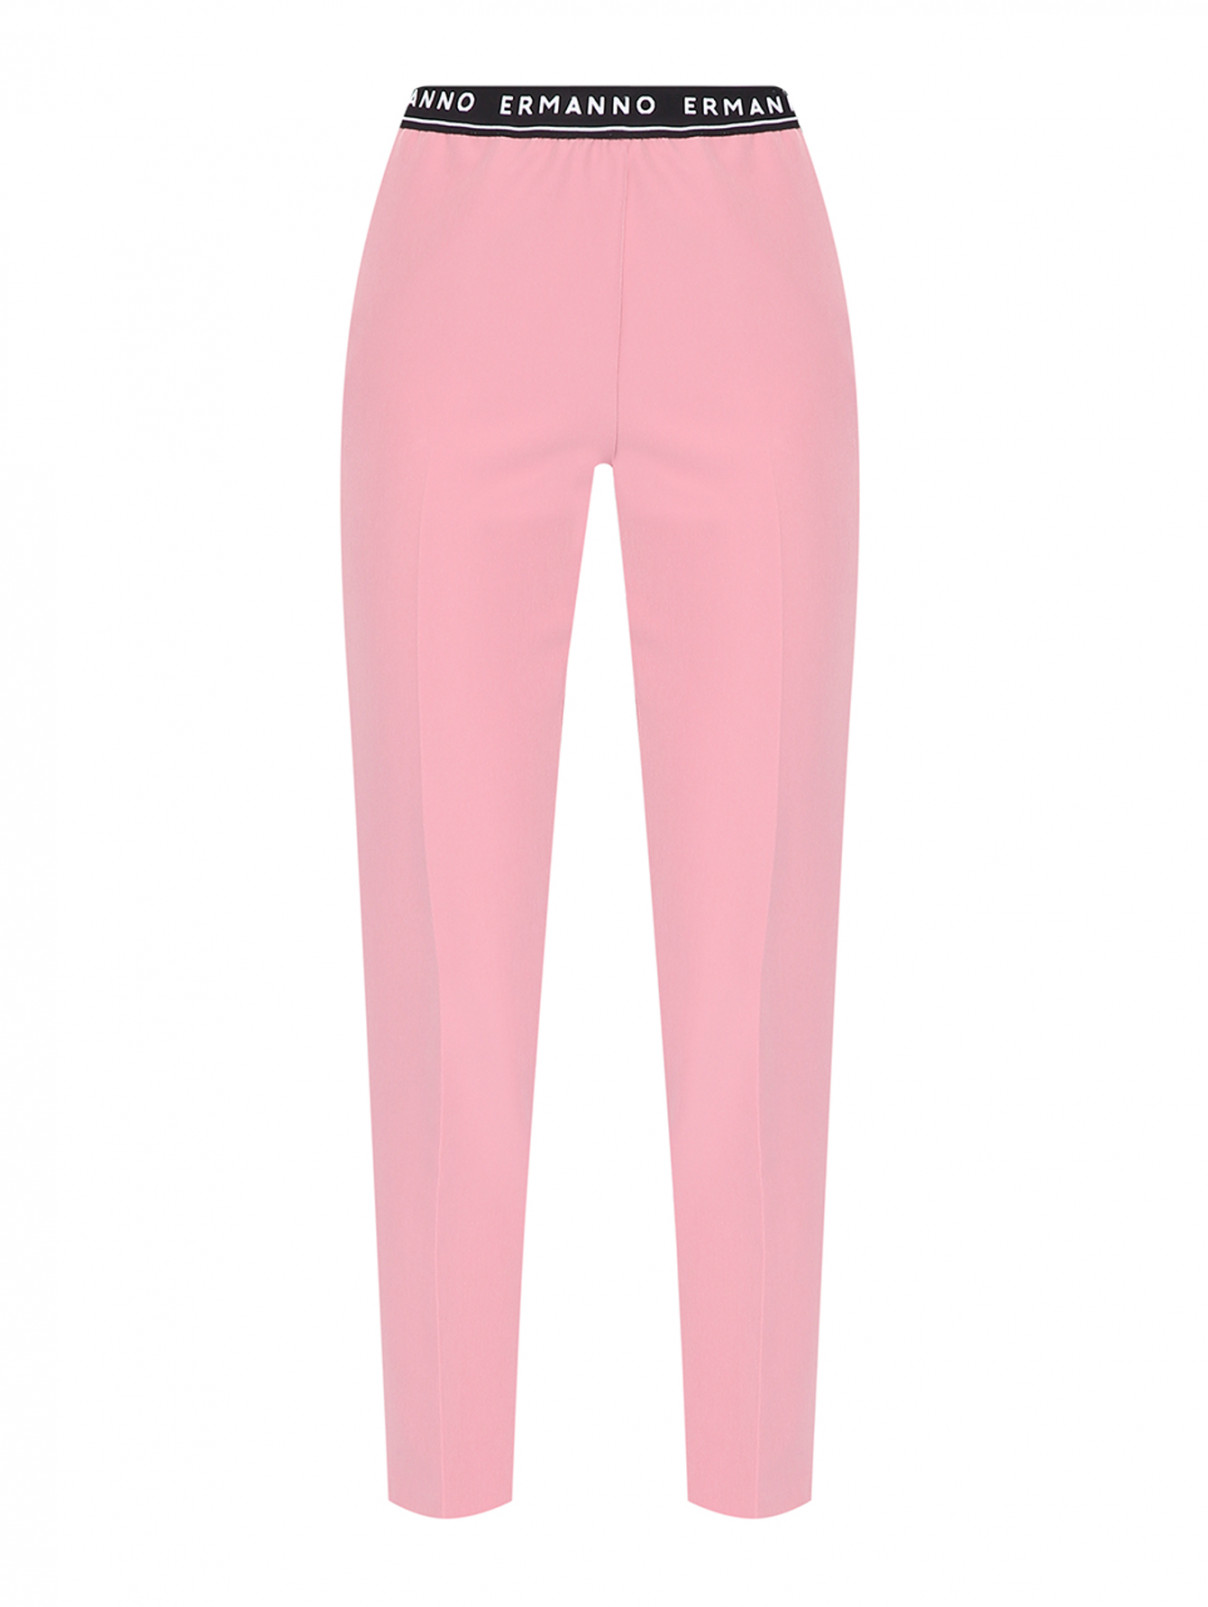 Однотонные брюки на резинке с логотипом Ermanno Firenze  –  Общий вид  – Цвет:  Розовый